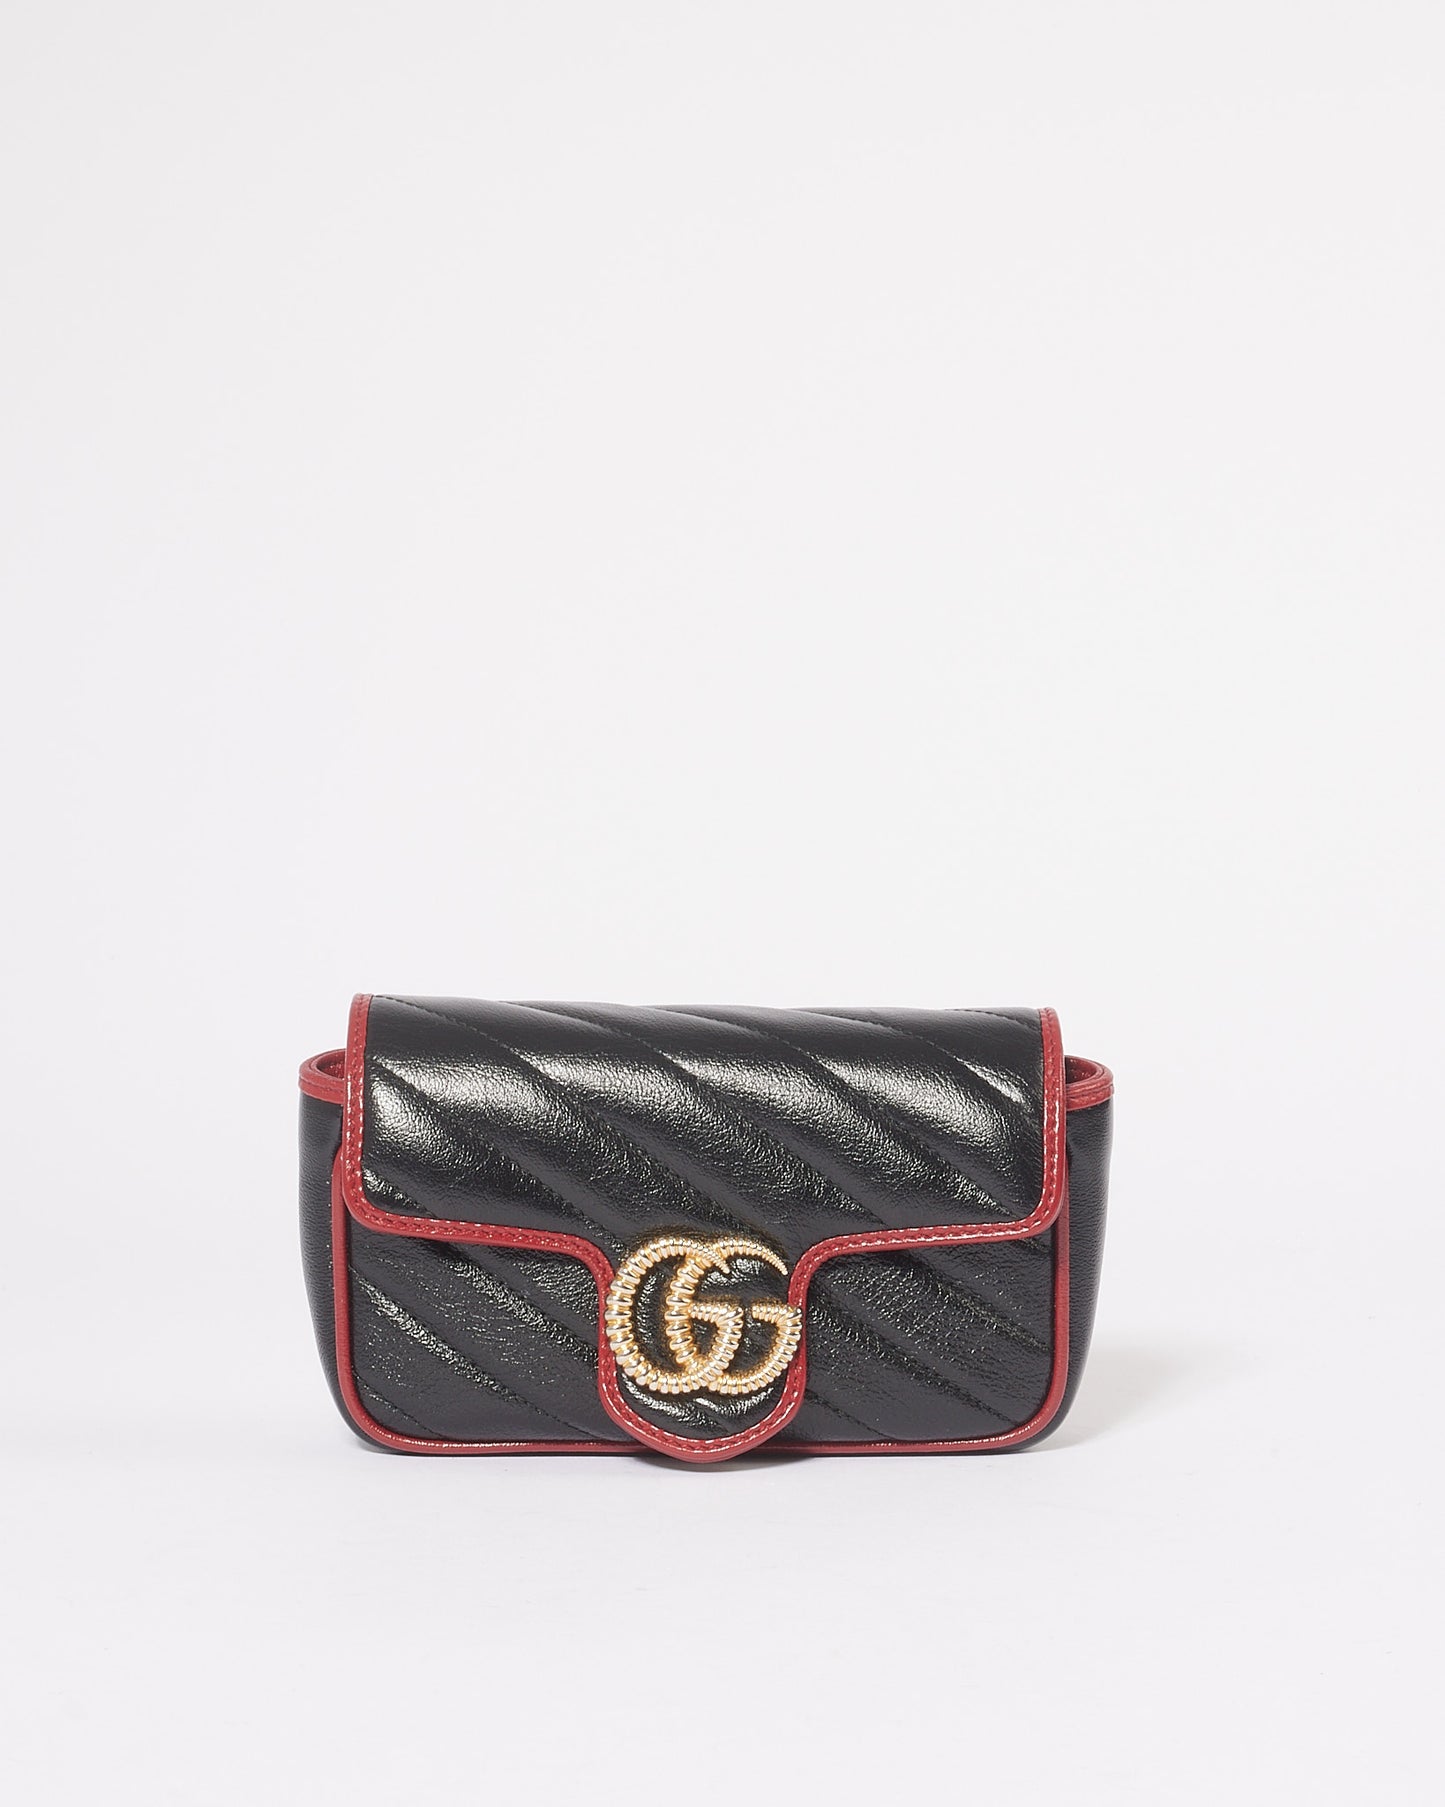 Gucci Sac Torchon GG Marmont Super Mini en cuir matelassé diagonal noir/rouge